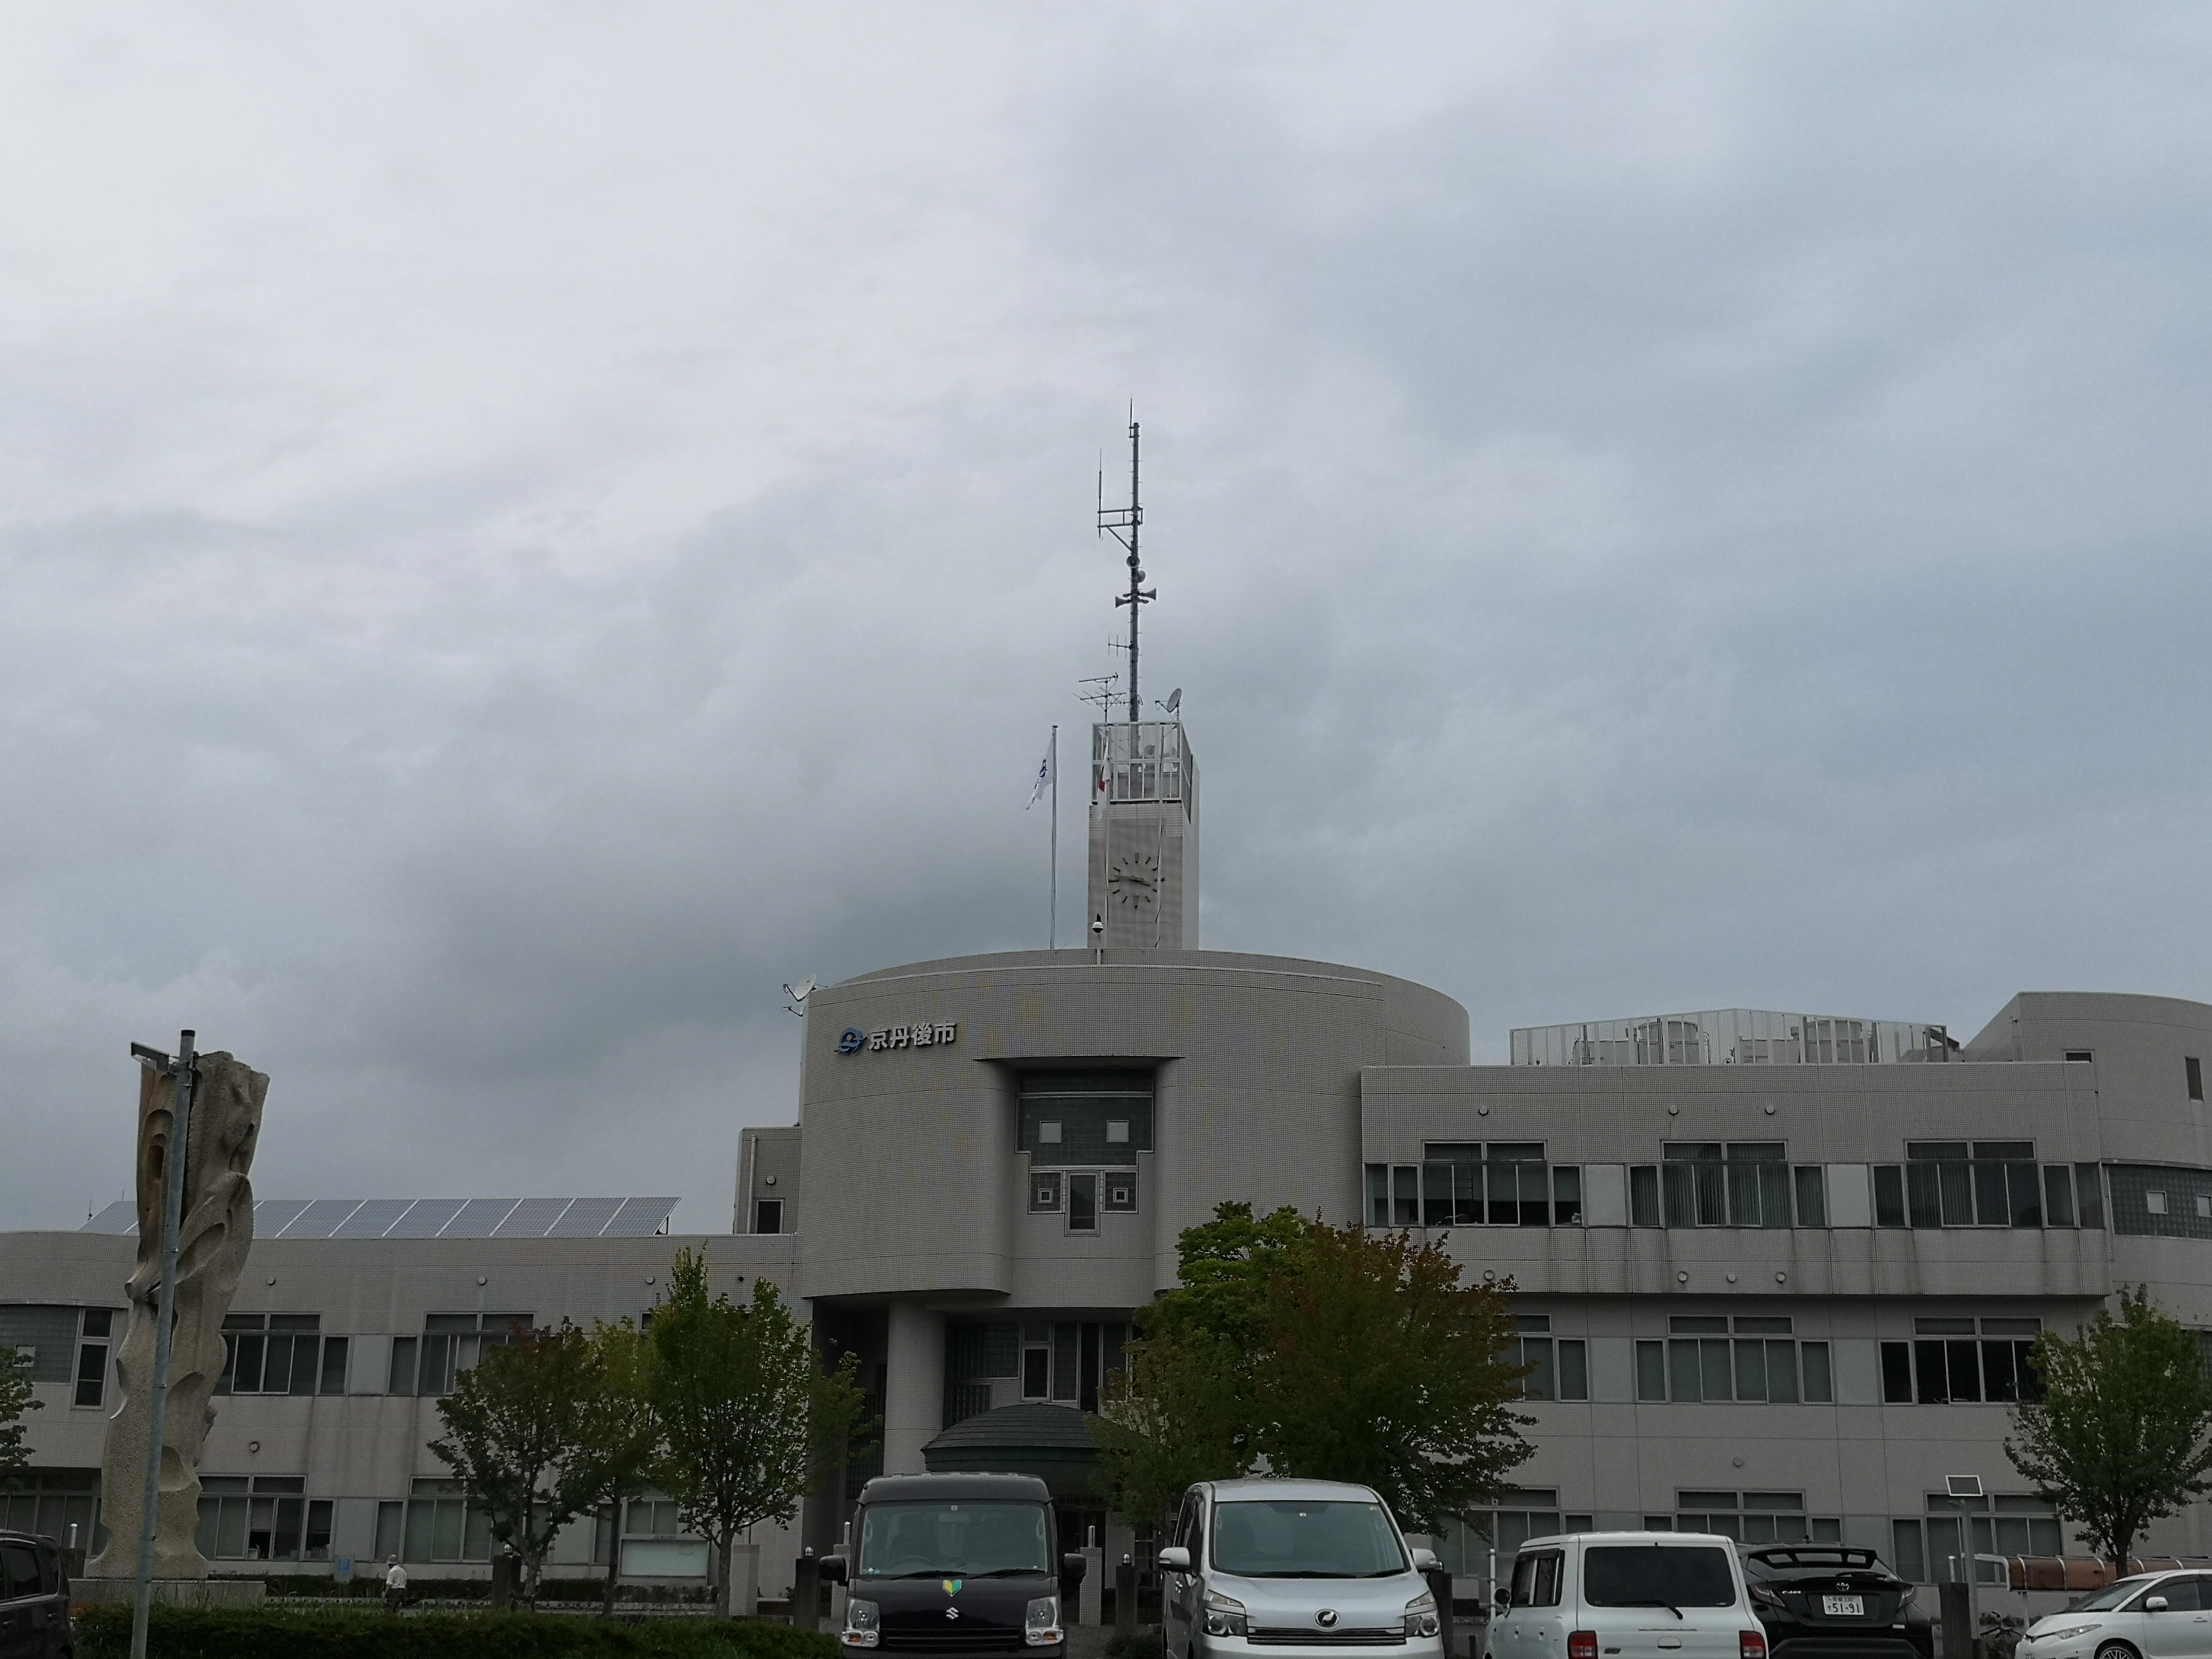 京丹後市役所峰山庁舎's image 1